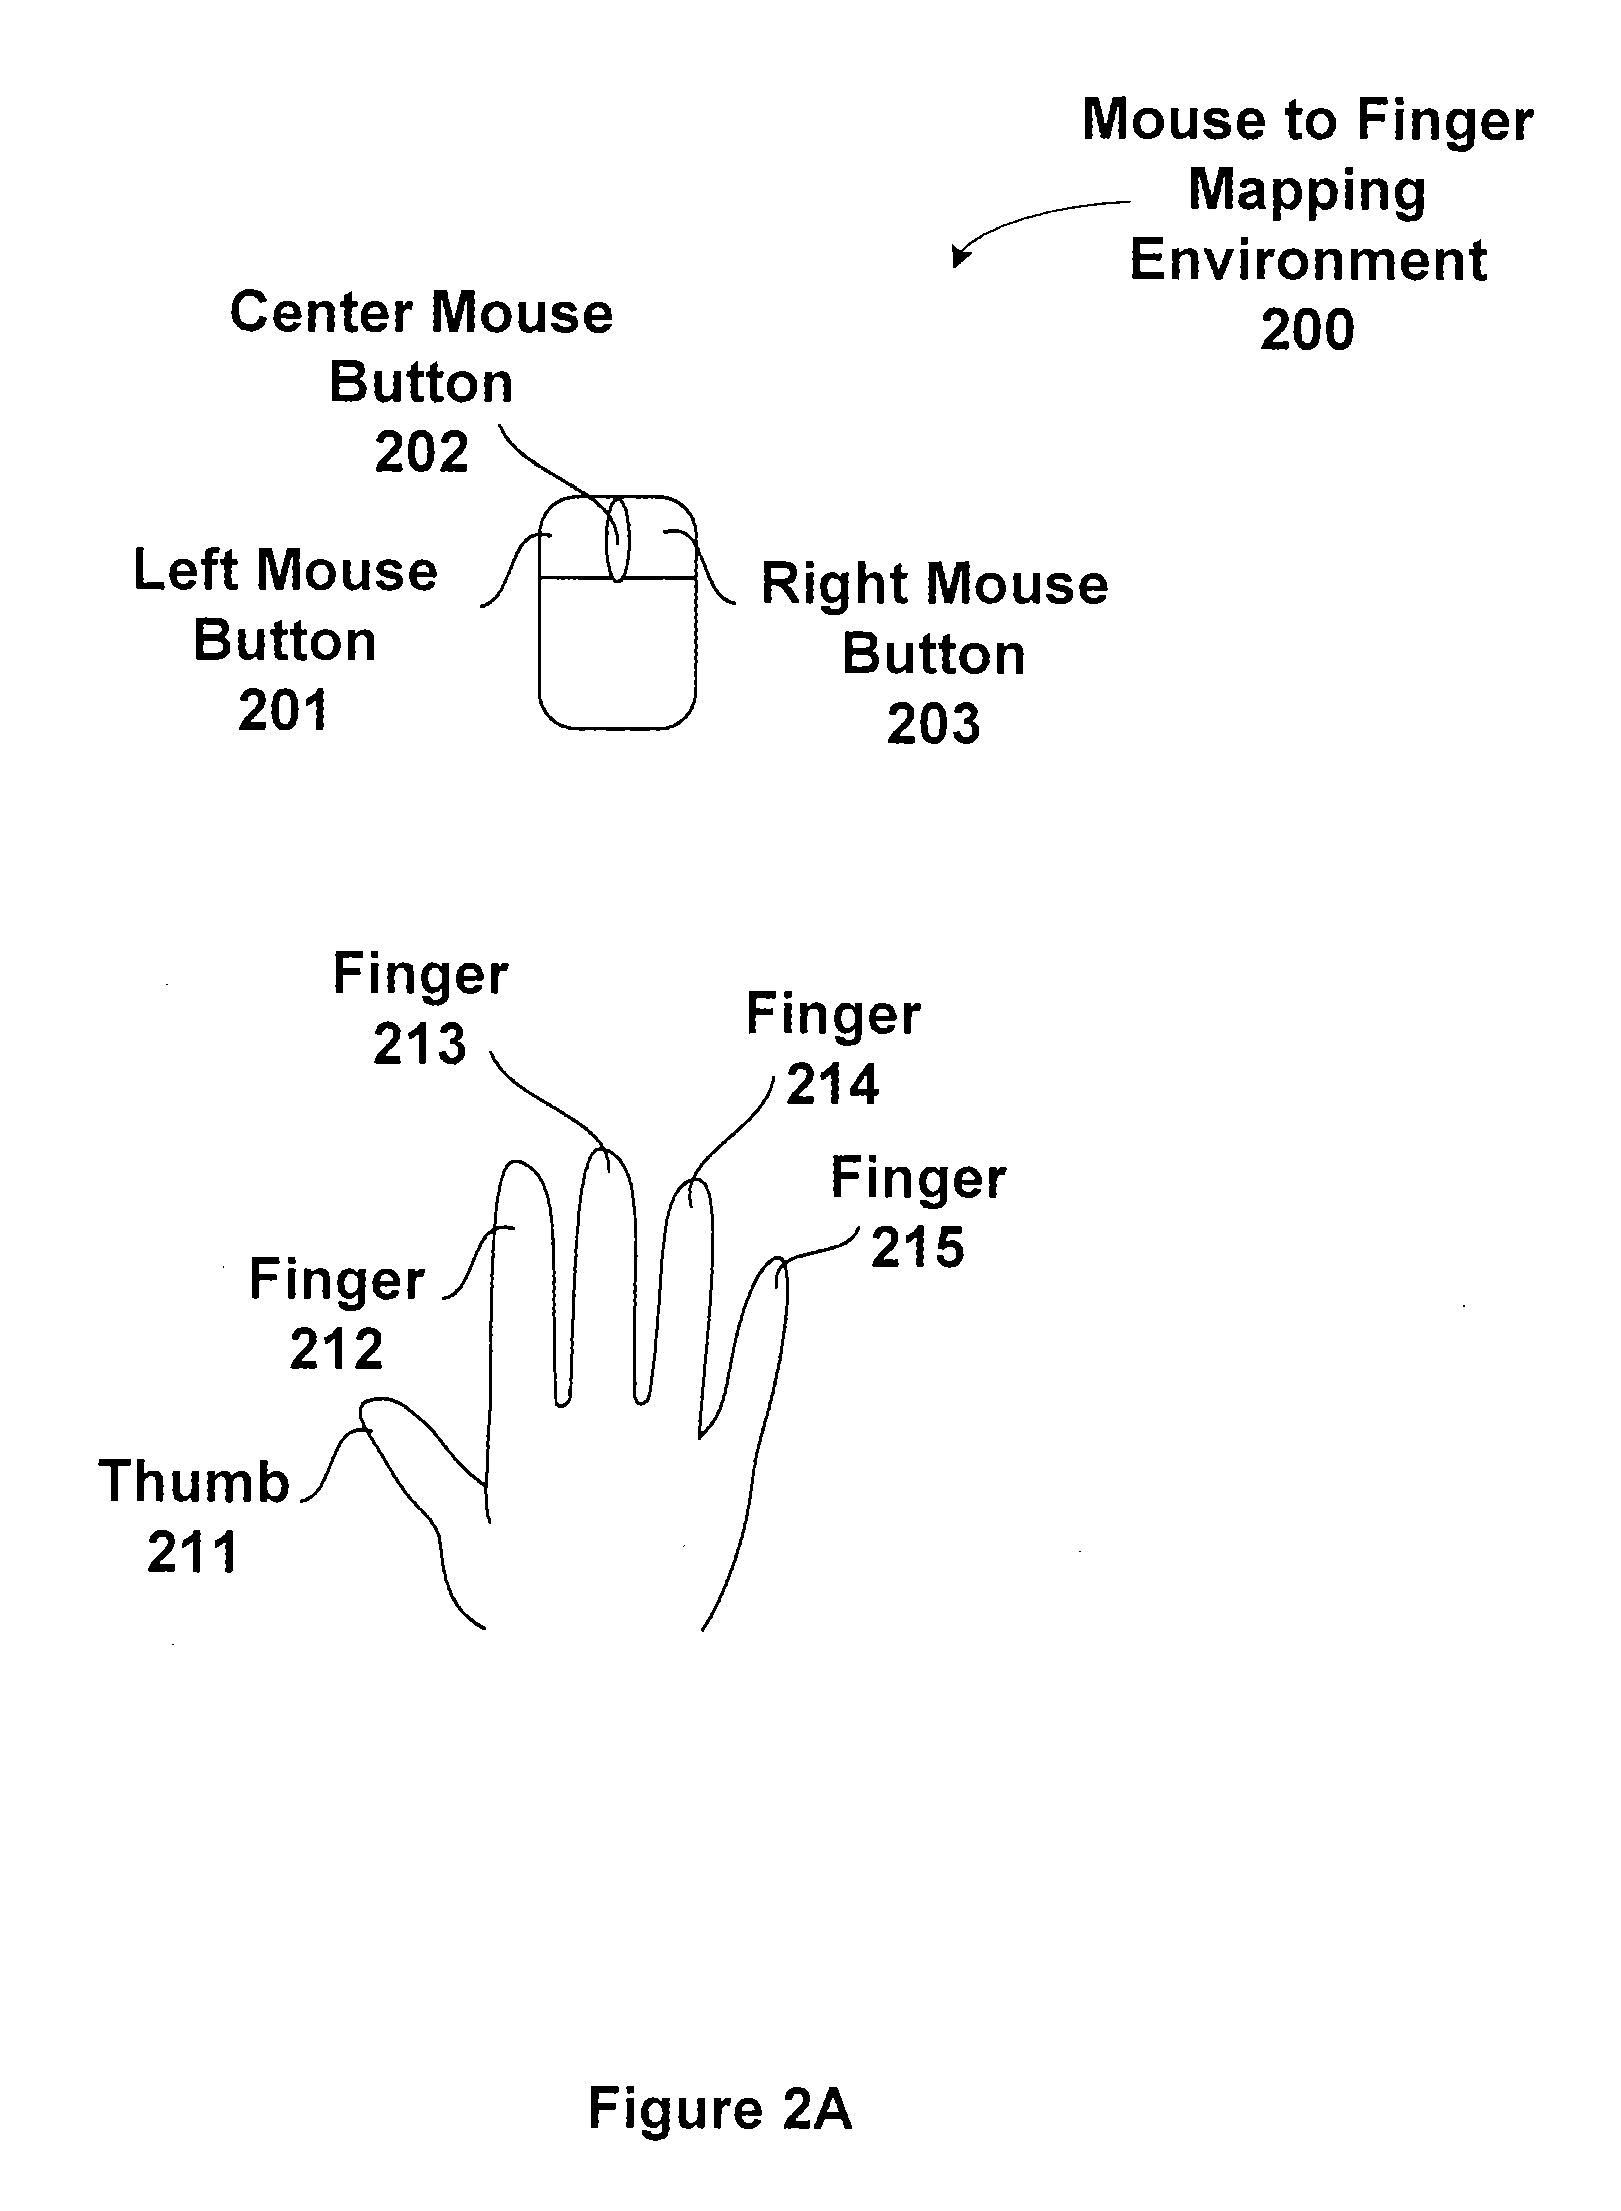 Multi-finger mouse emulation